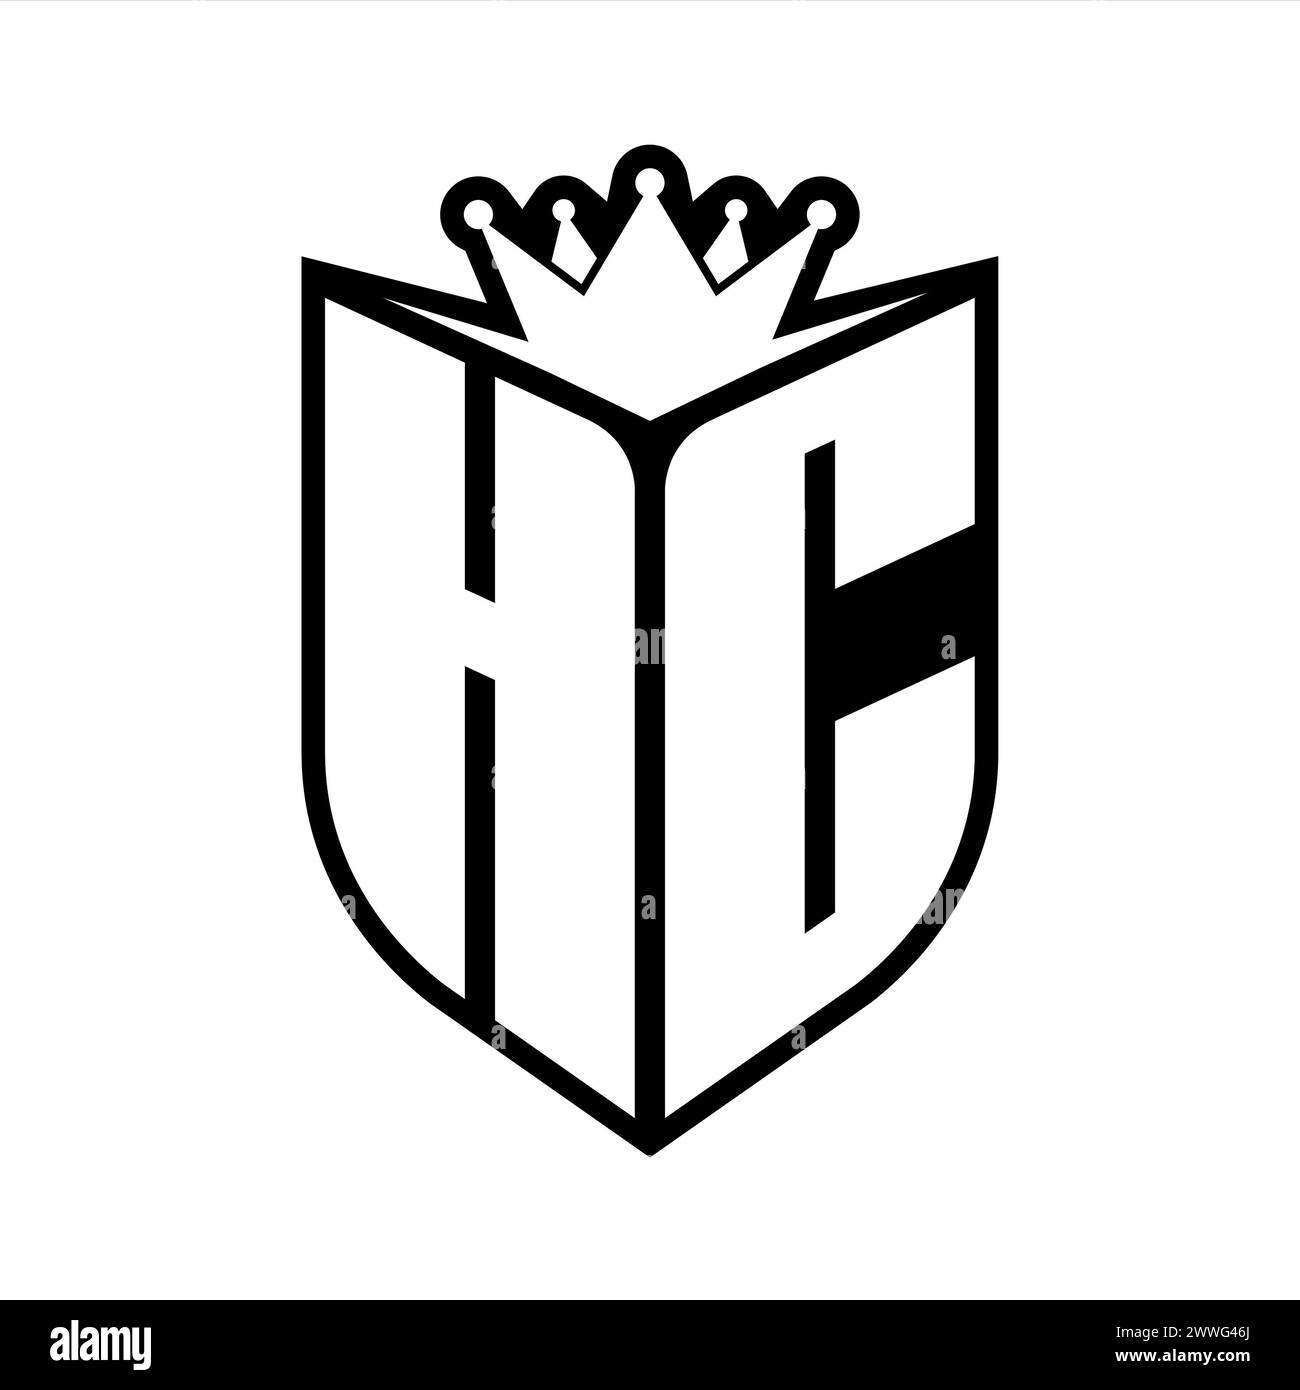 Auffälliges Monogramm mit HC-Letter in Schildform und scharfer Krone im Schild in Schwarz-weiß-Farbe Stockfoto